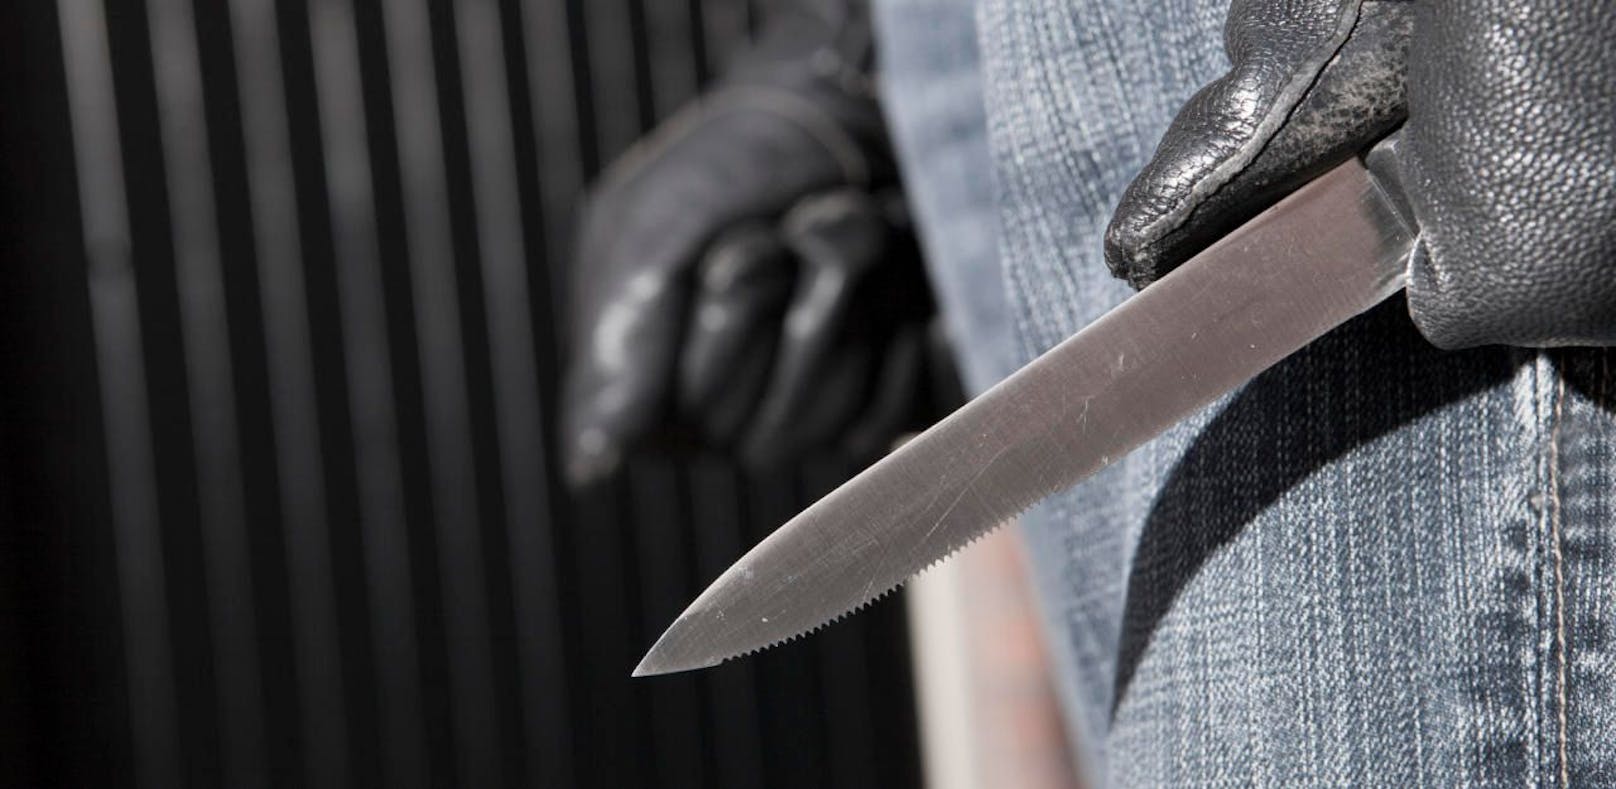 Messer-Attacke bei Streit unter 20 Jugendlichen